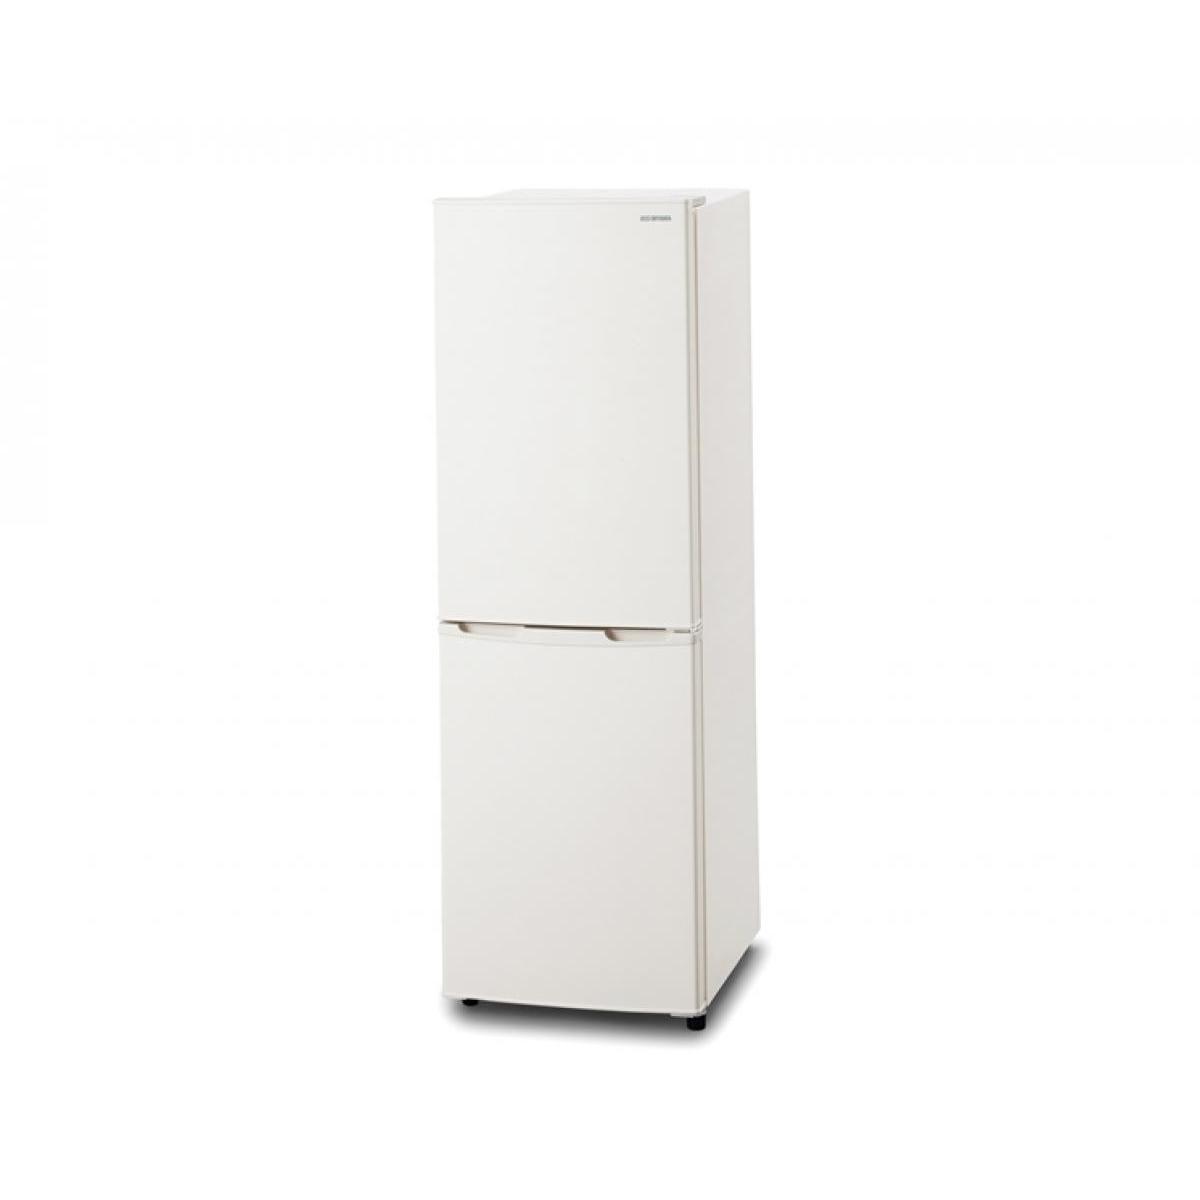 【楽天市場】アイリスオーヤマ IRIS 冷凍冷蔵庫 162L ホワイト IRSE